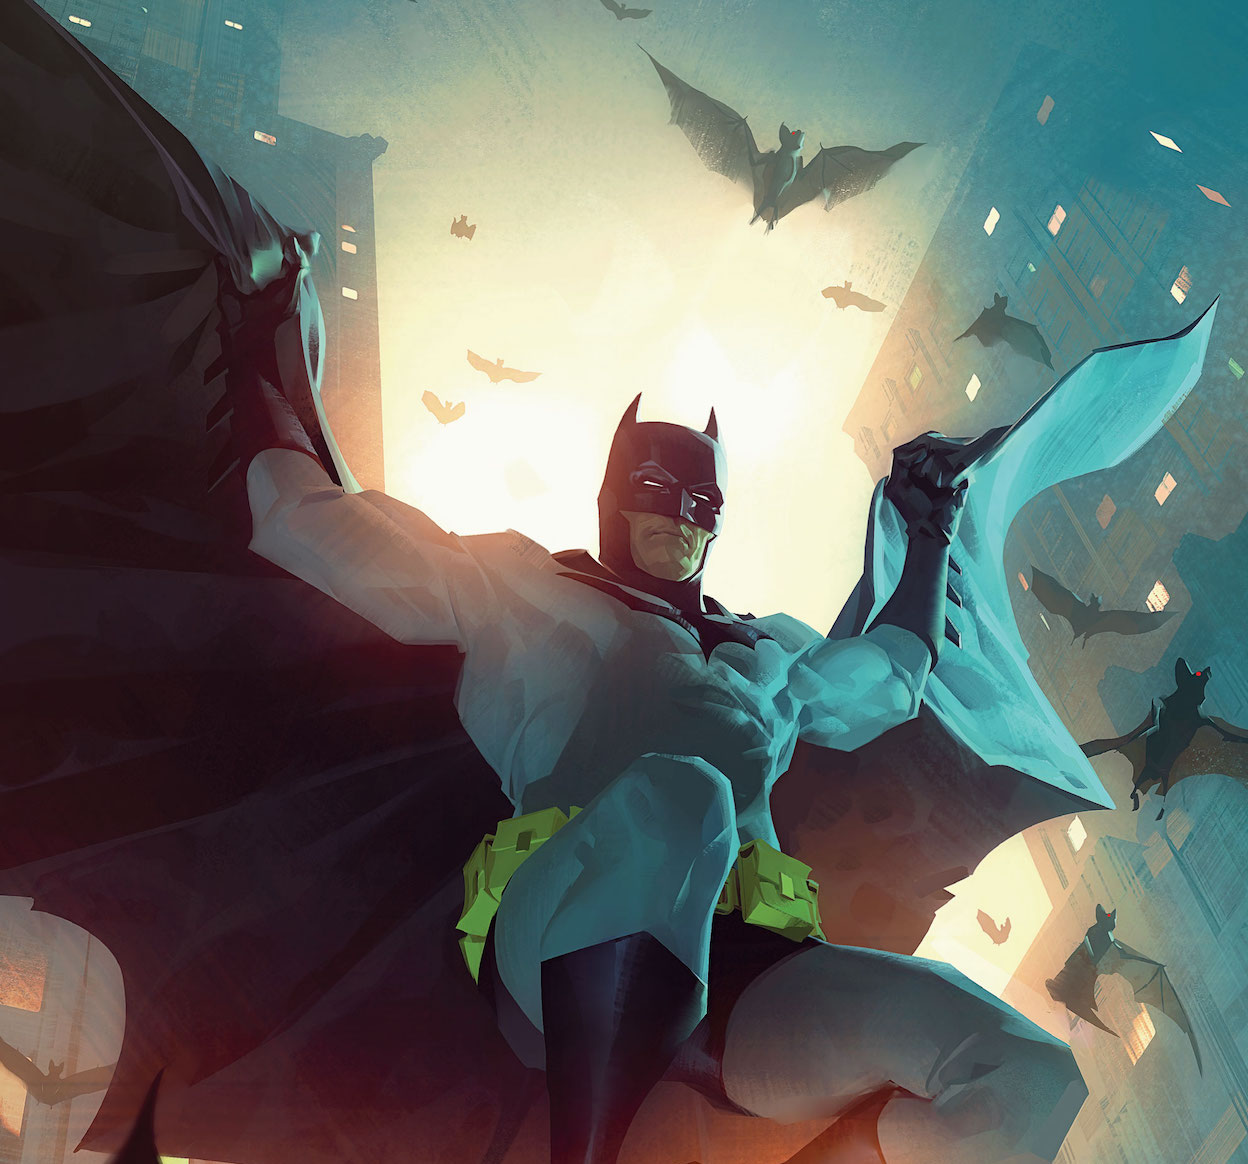 'Batman' #125 takes a dark, nihilistic approach to Bruce Wayne